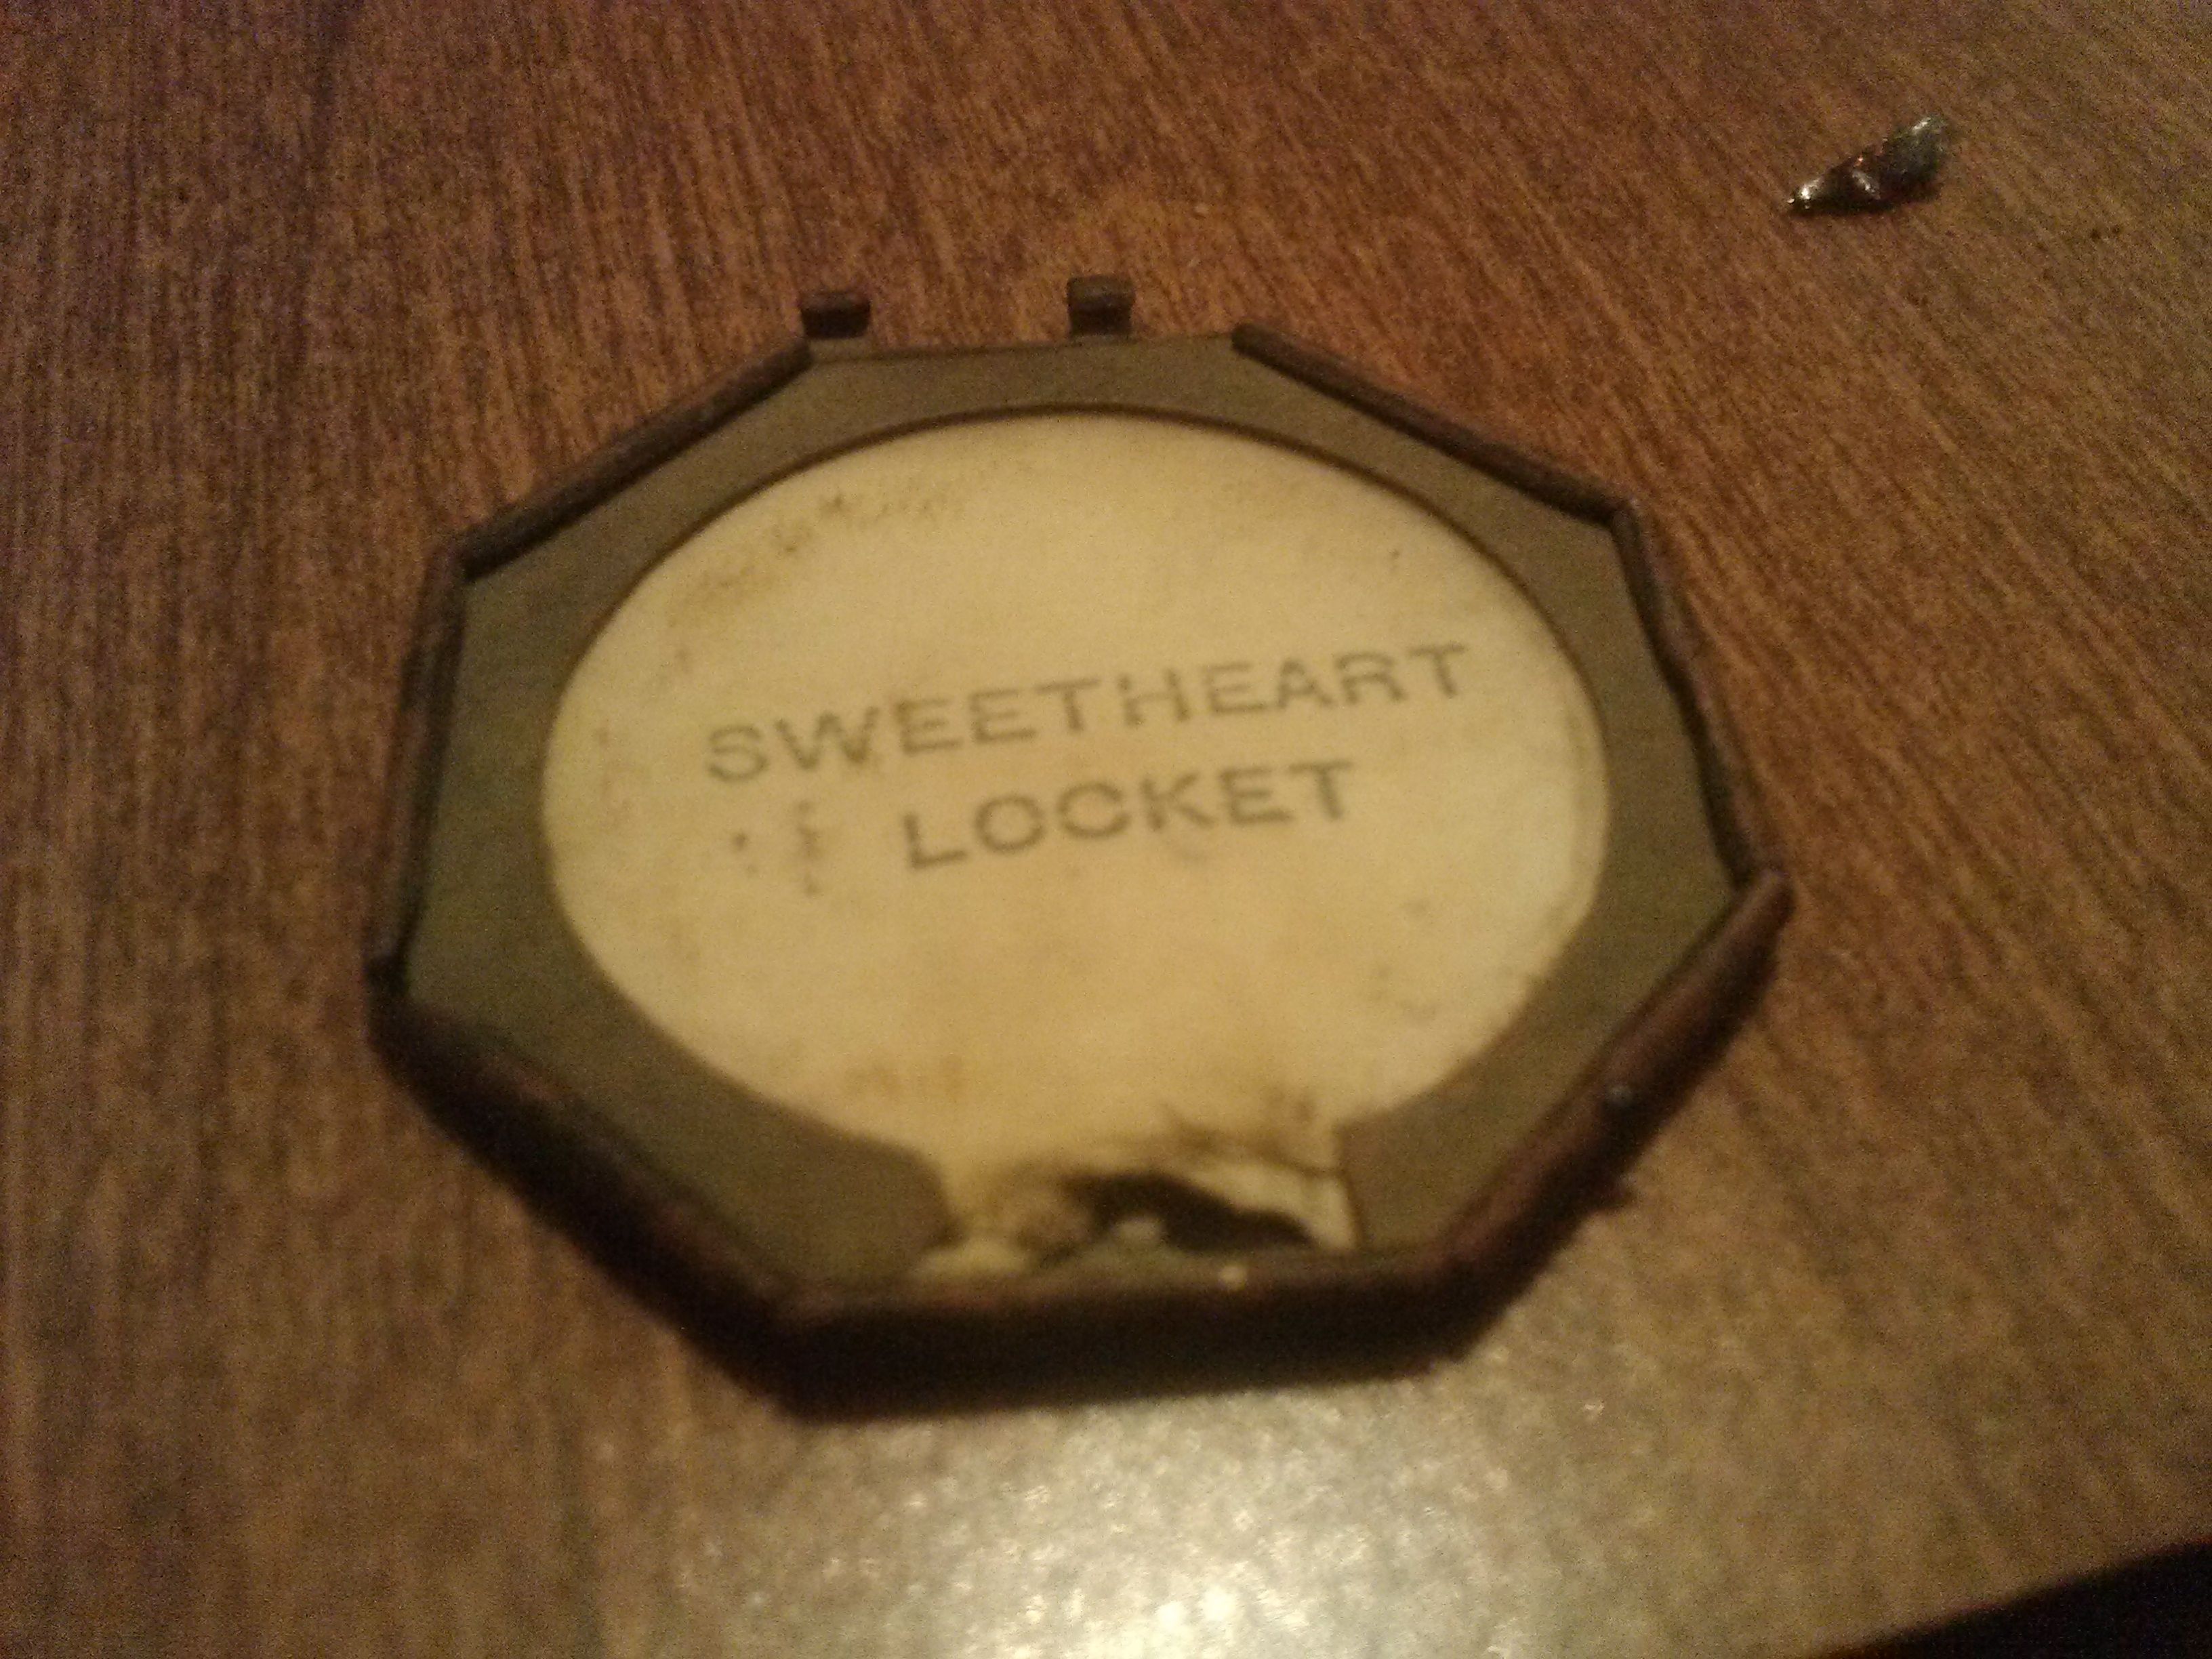 Sweetheart Locket